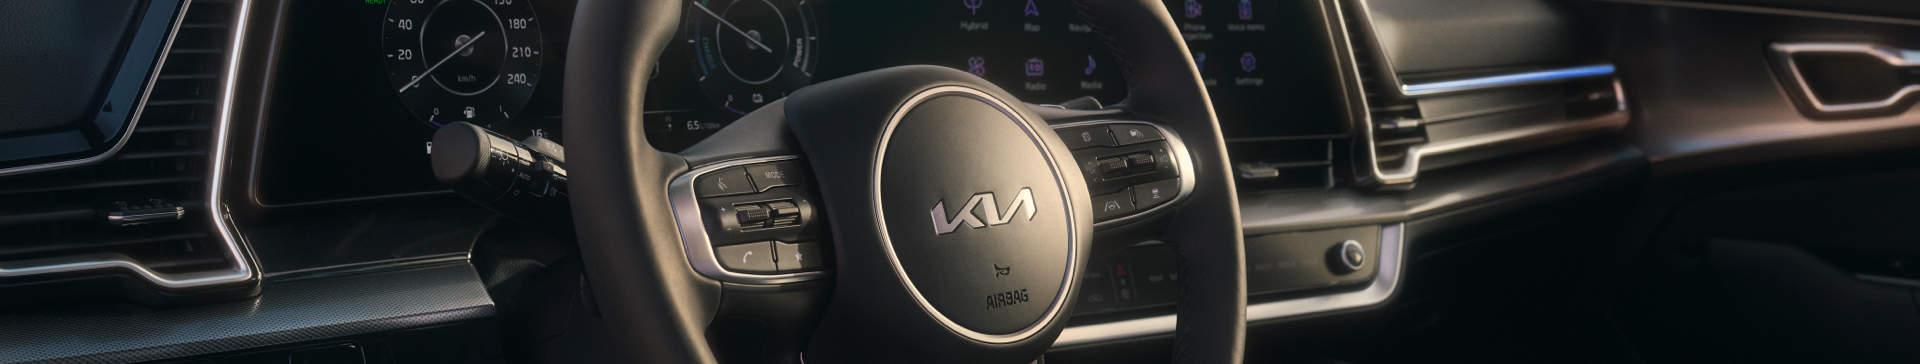 Imagen clave de Kia Drive Wise con logotipo